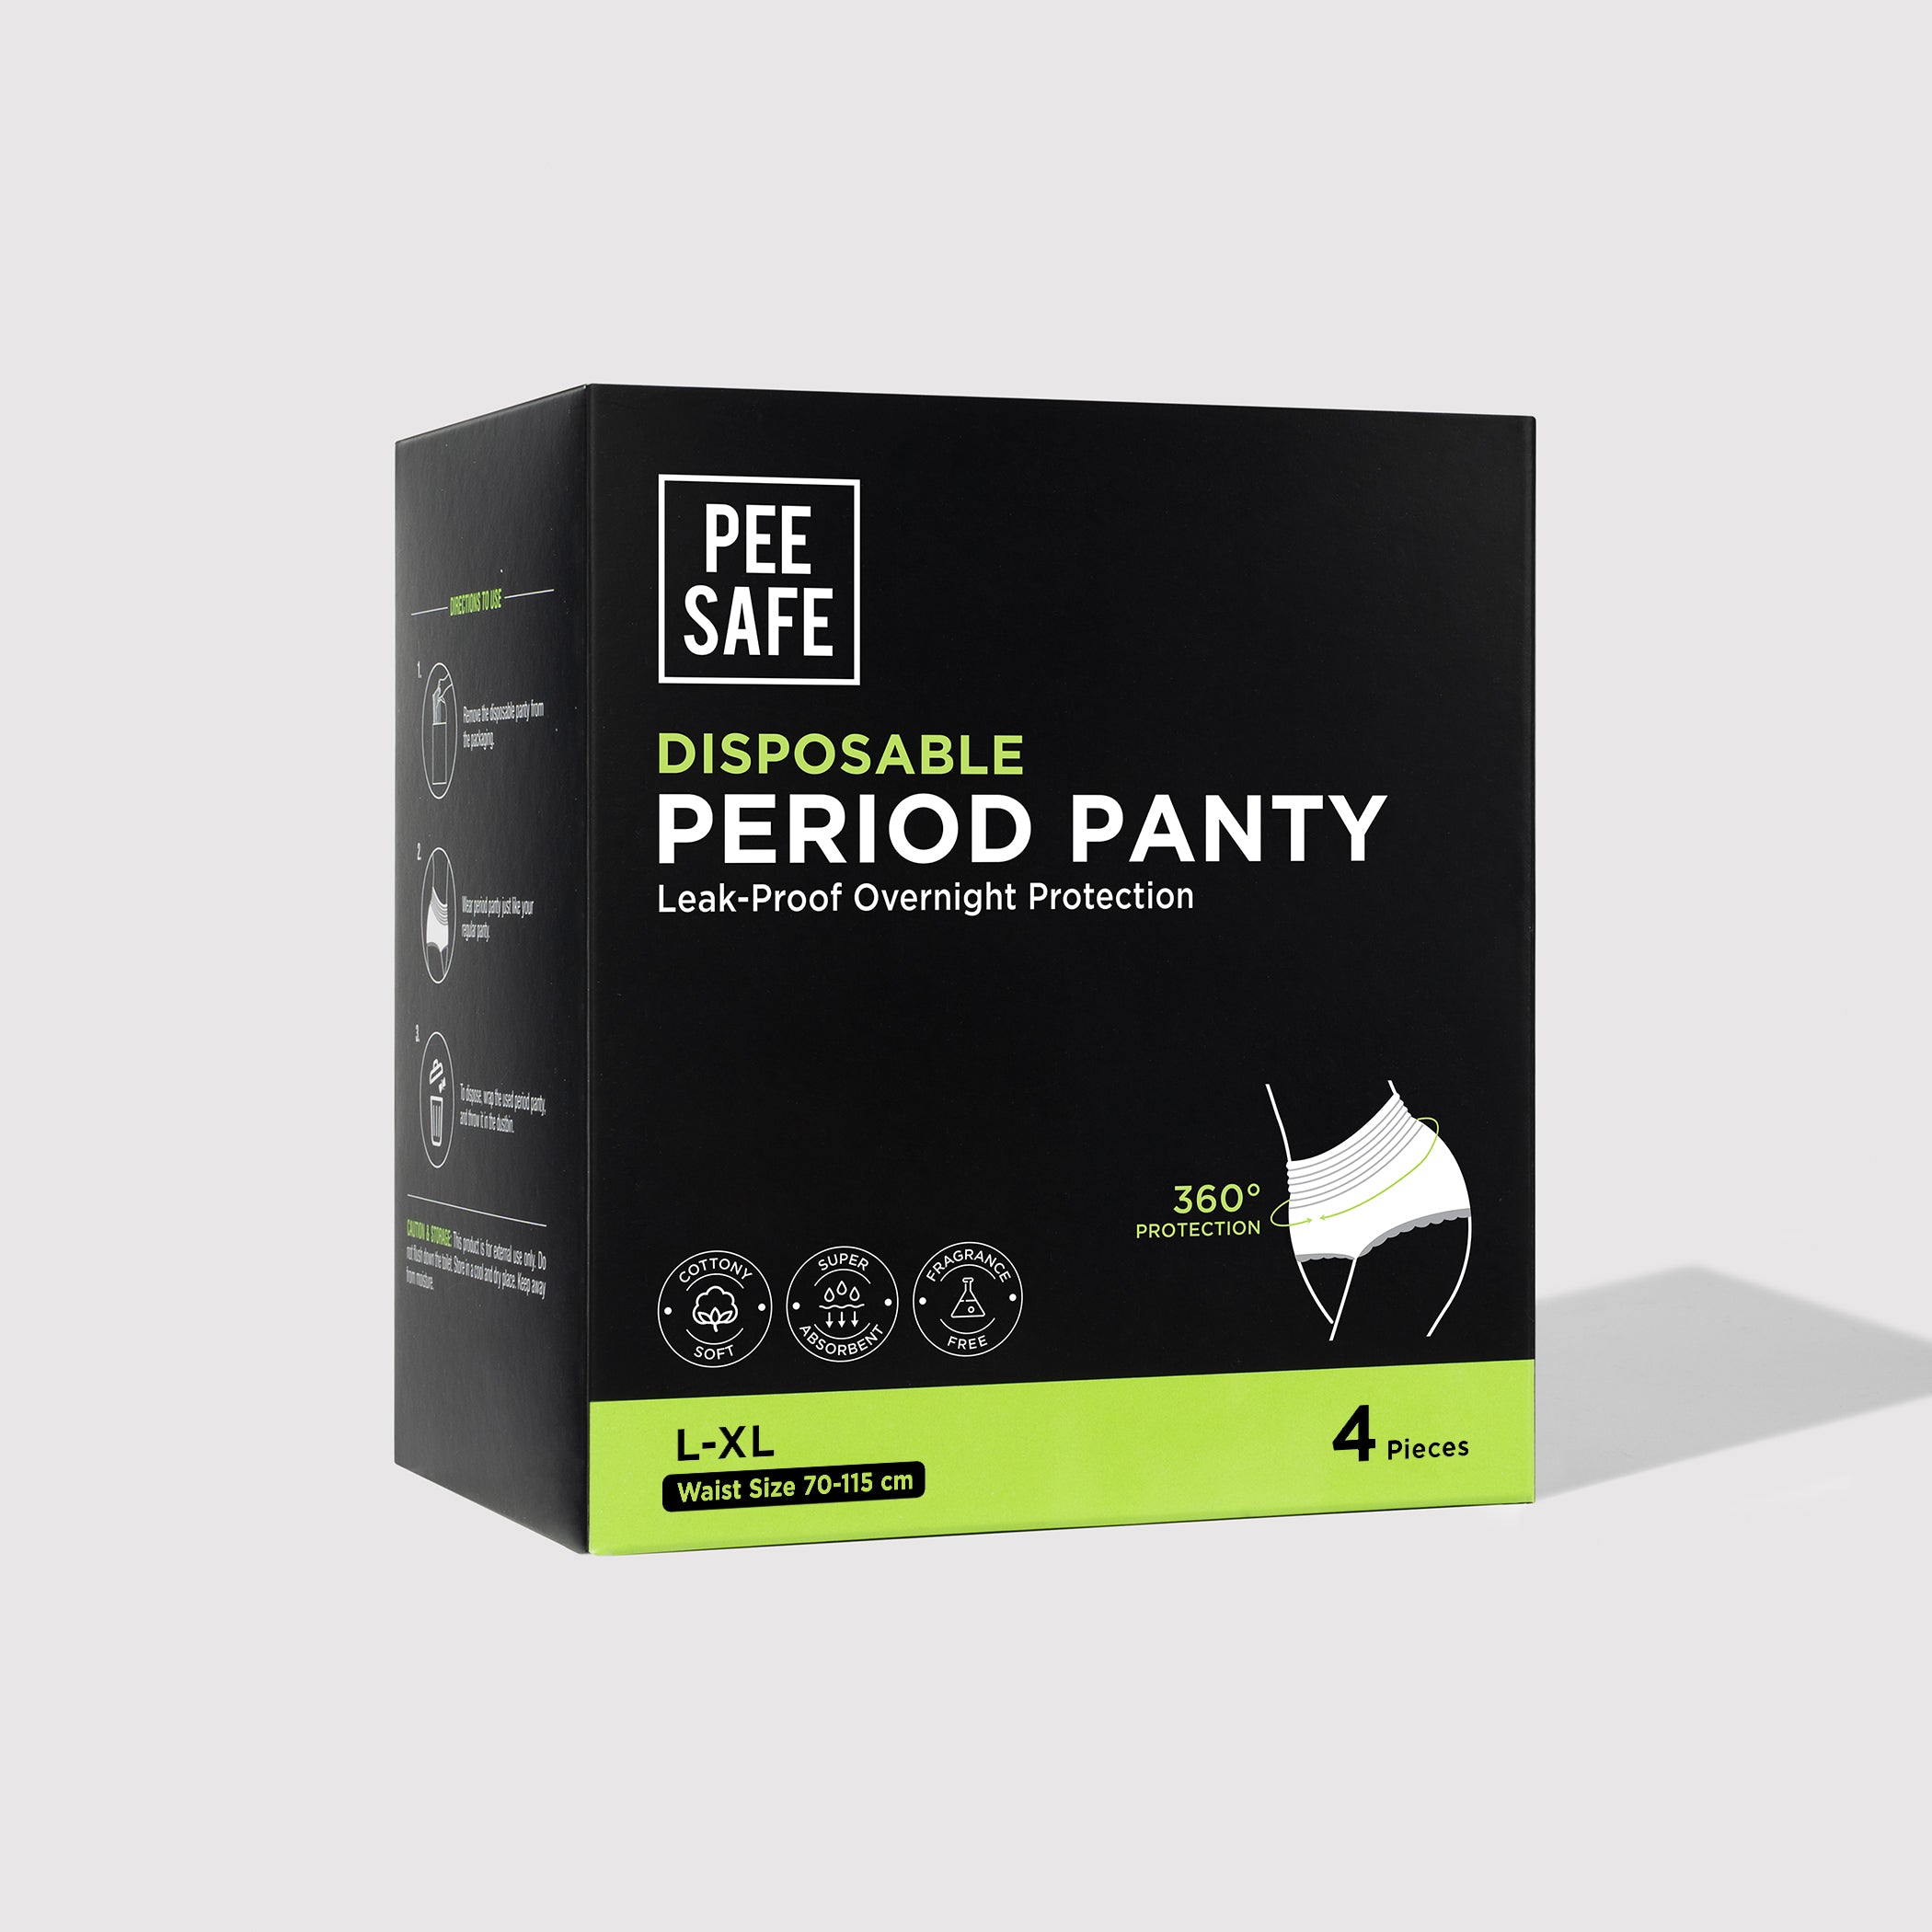 Pee Safe Disposable Period Panty (L-XL) 4N - BULK BUY